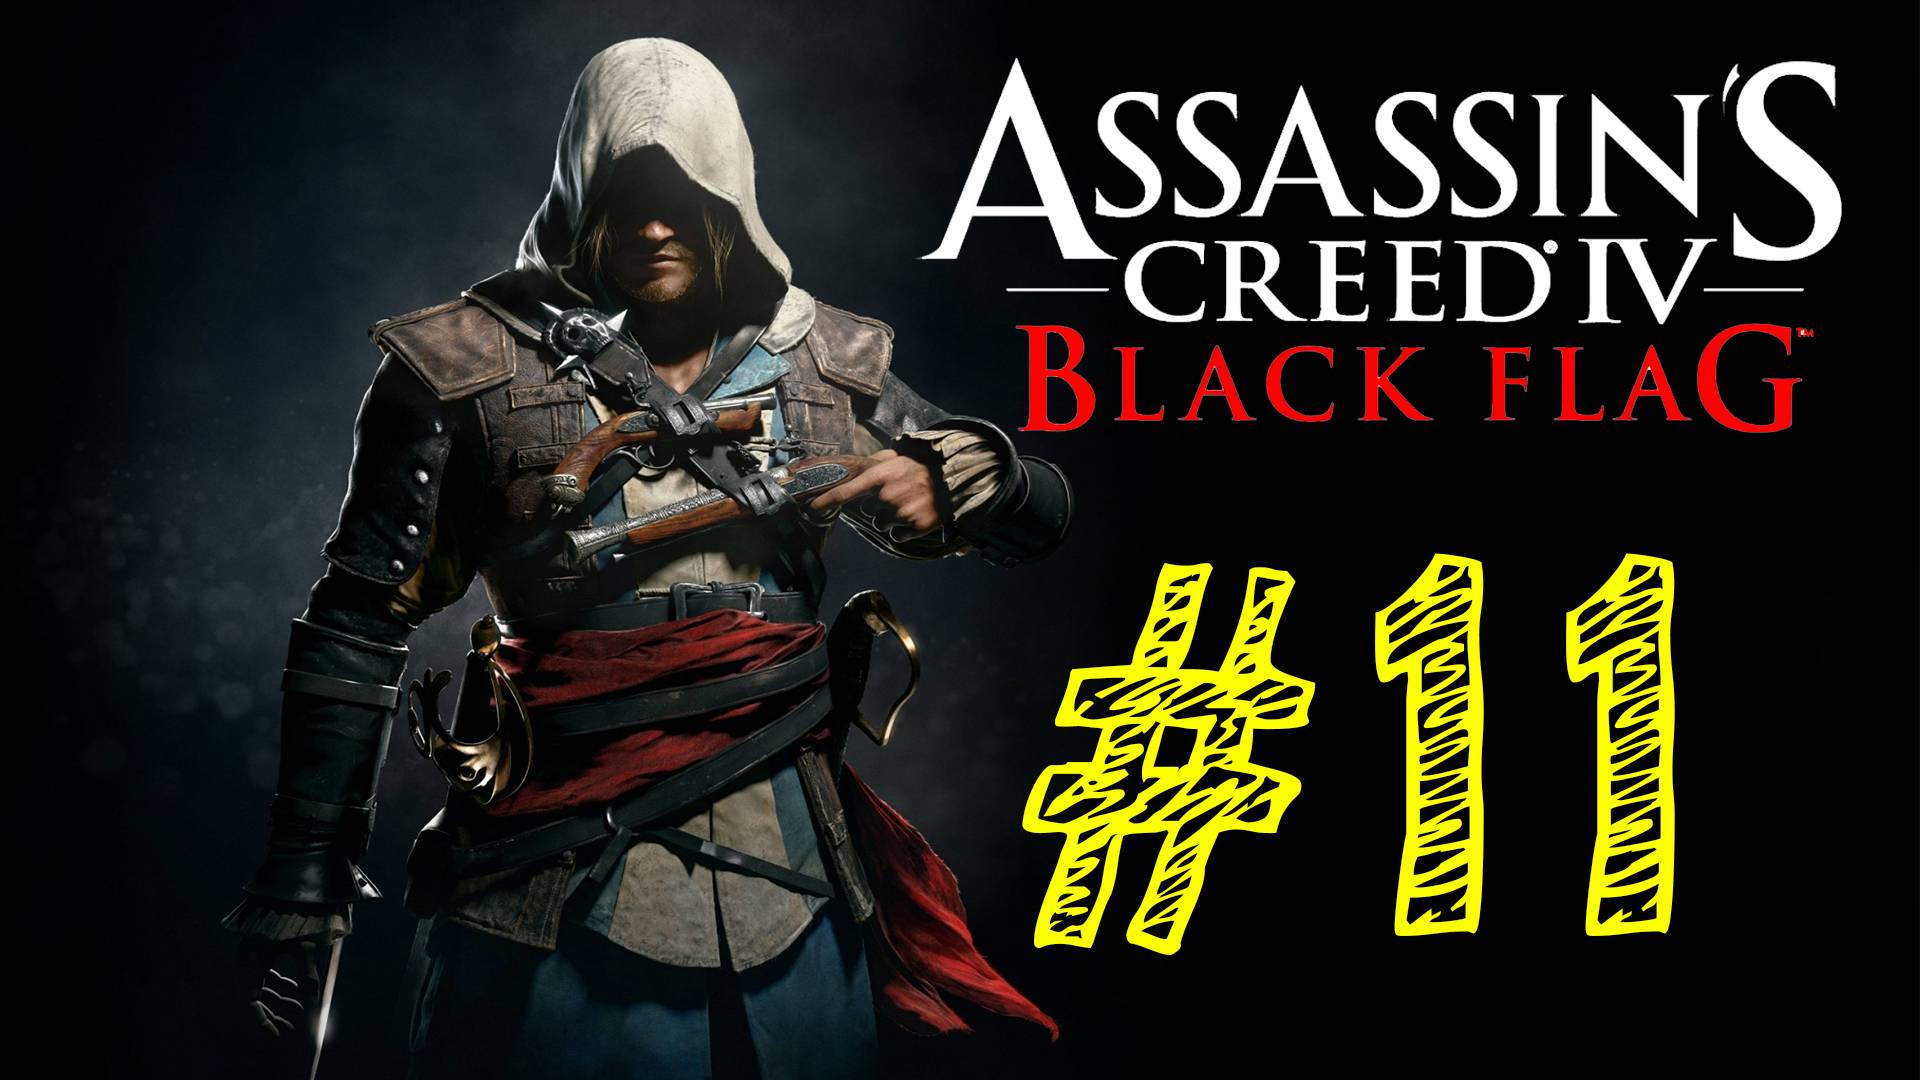 Assassins Creed IV Black Flag. Ассасин черный флаг. 11 выпуск. ВЕК ПИРАТСТВА. Прохождение компании